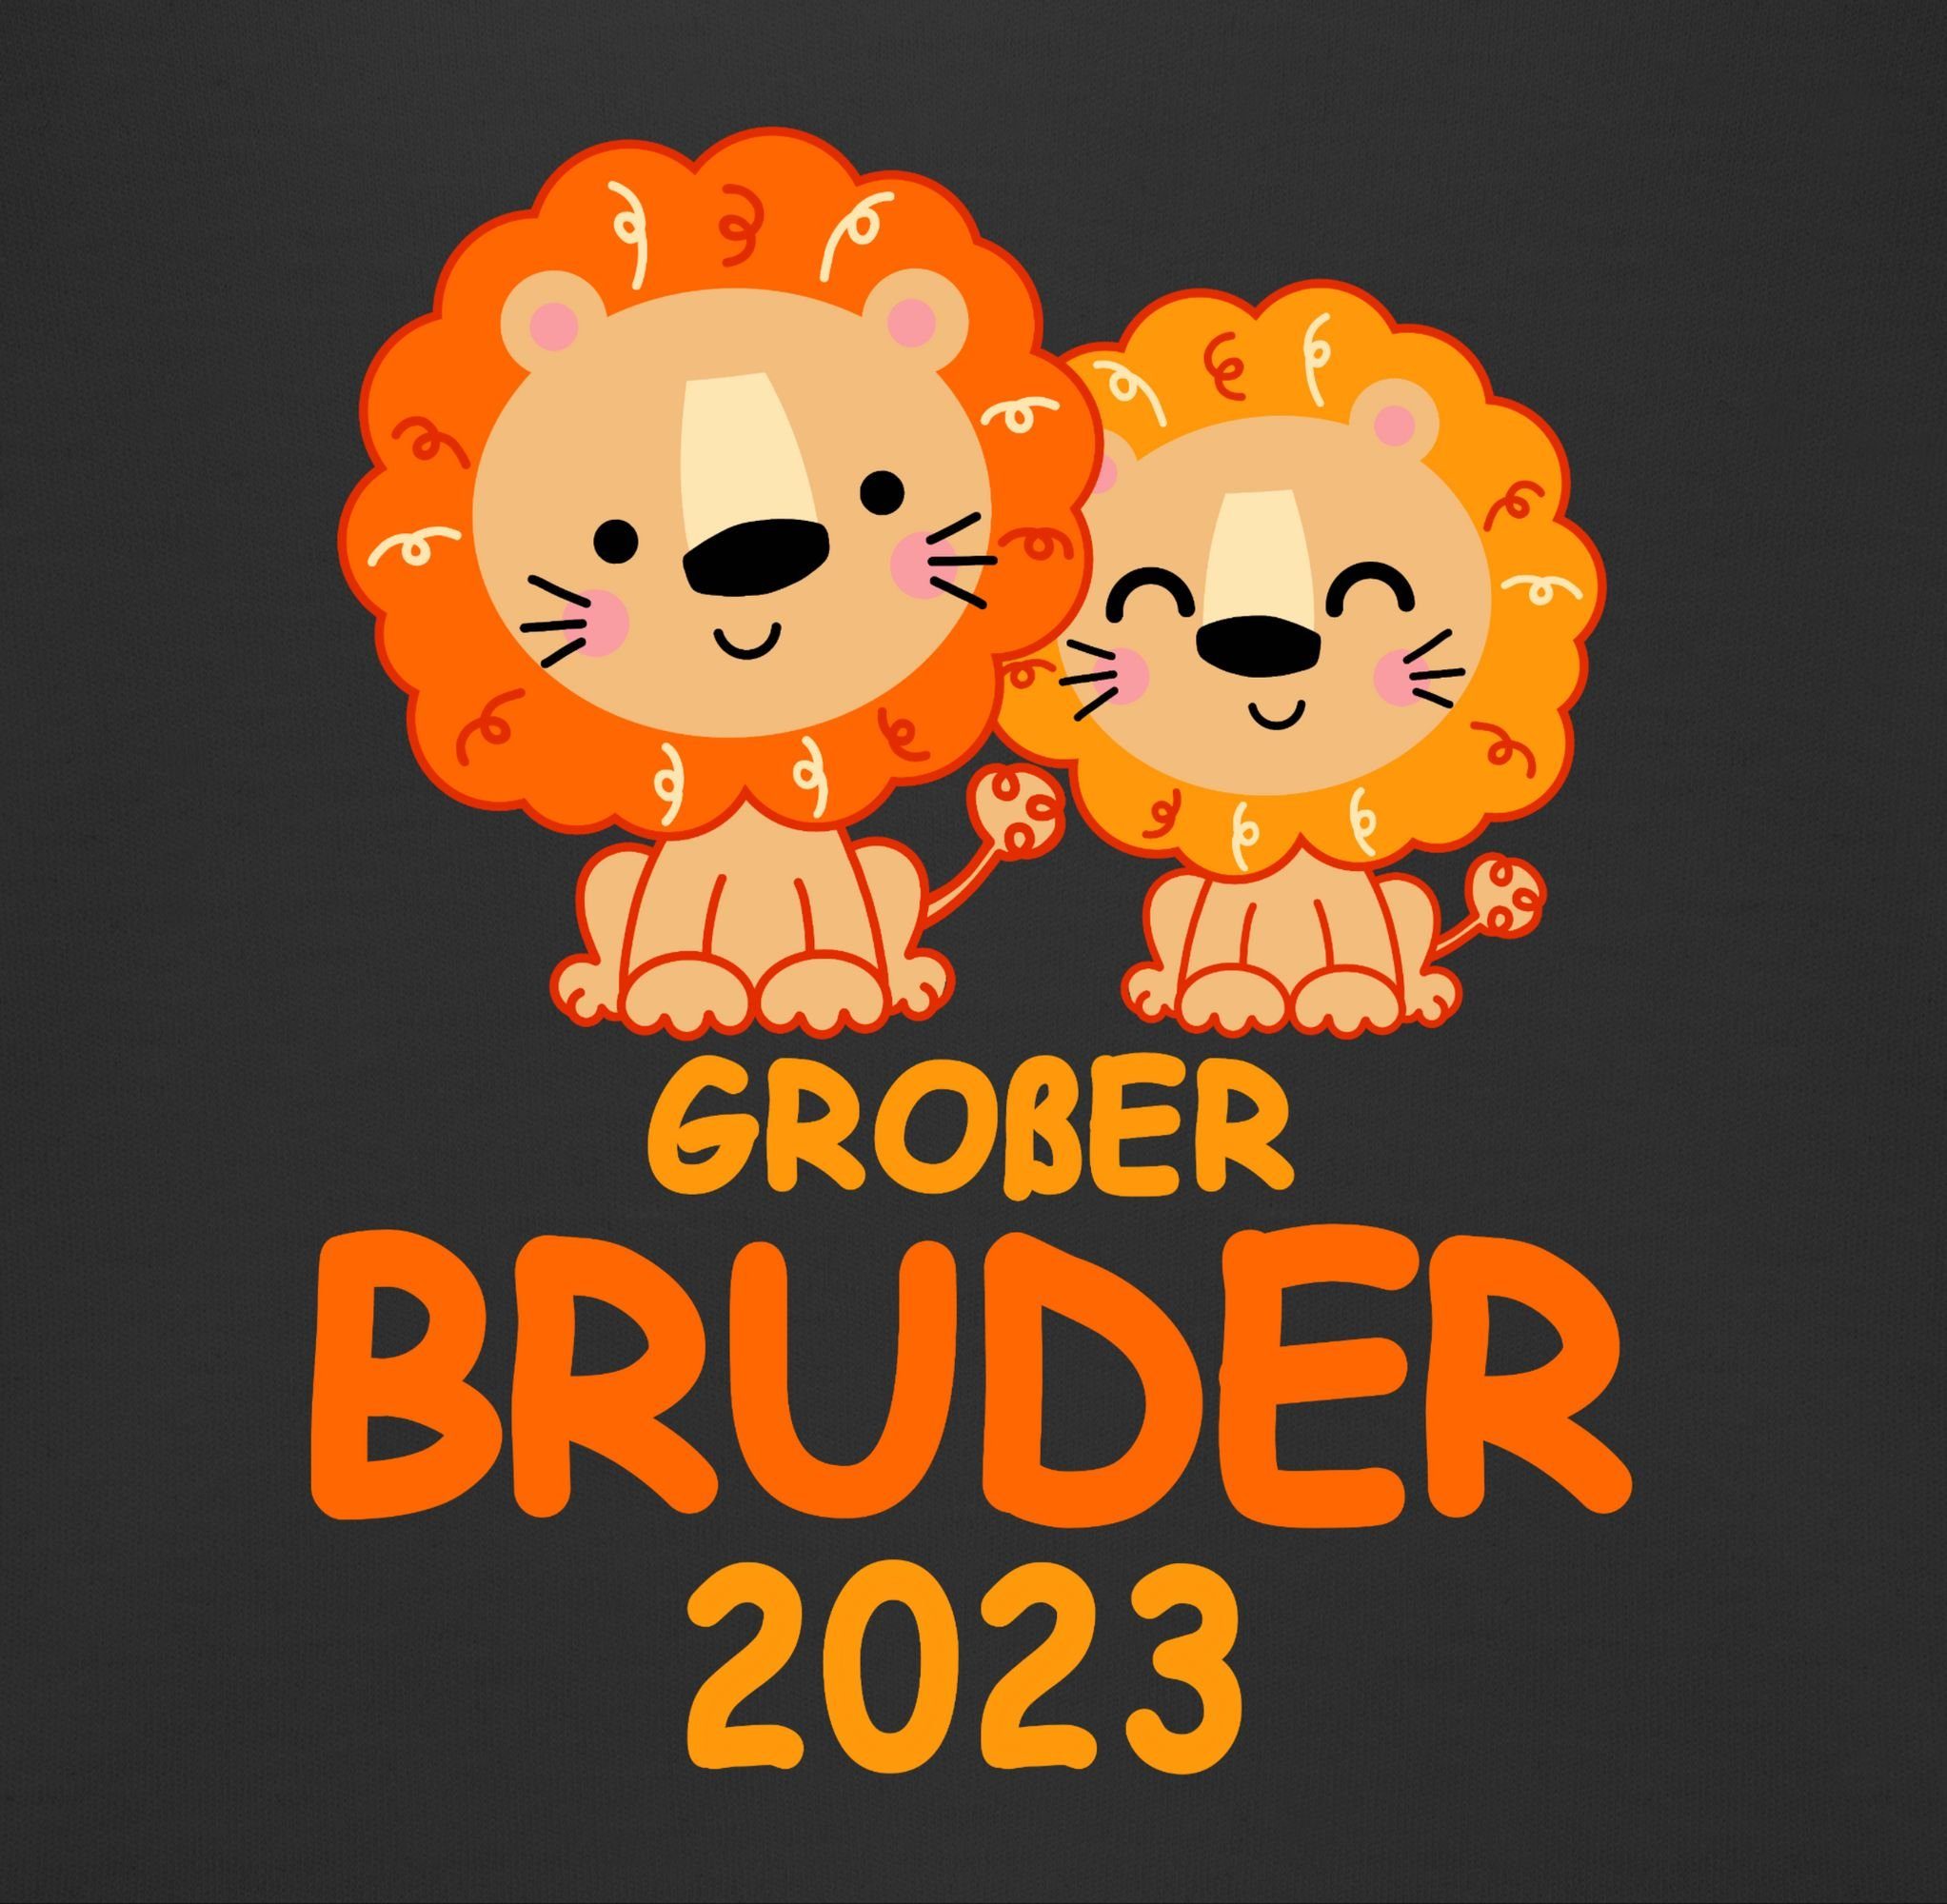 Bruder Löwen mit Großer 2023 Sweatshirt Schwarz 3 Shirtracer Großer Bruder